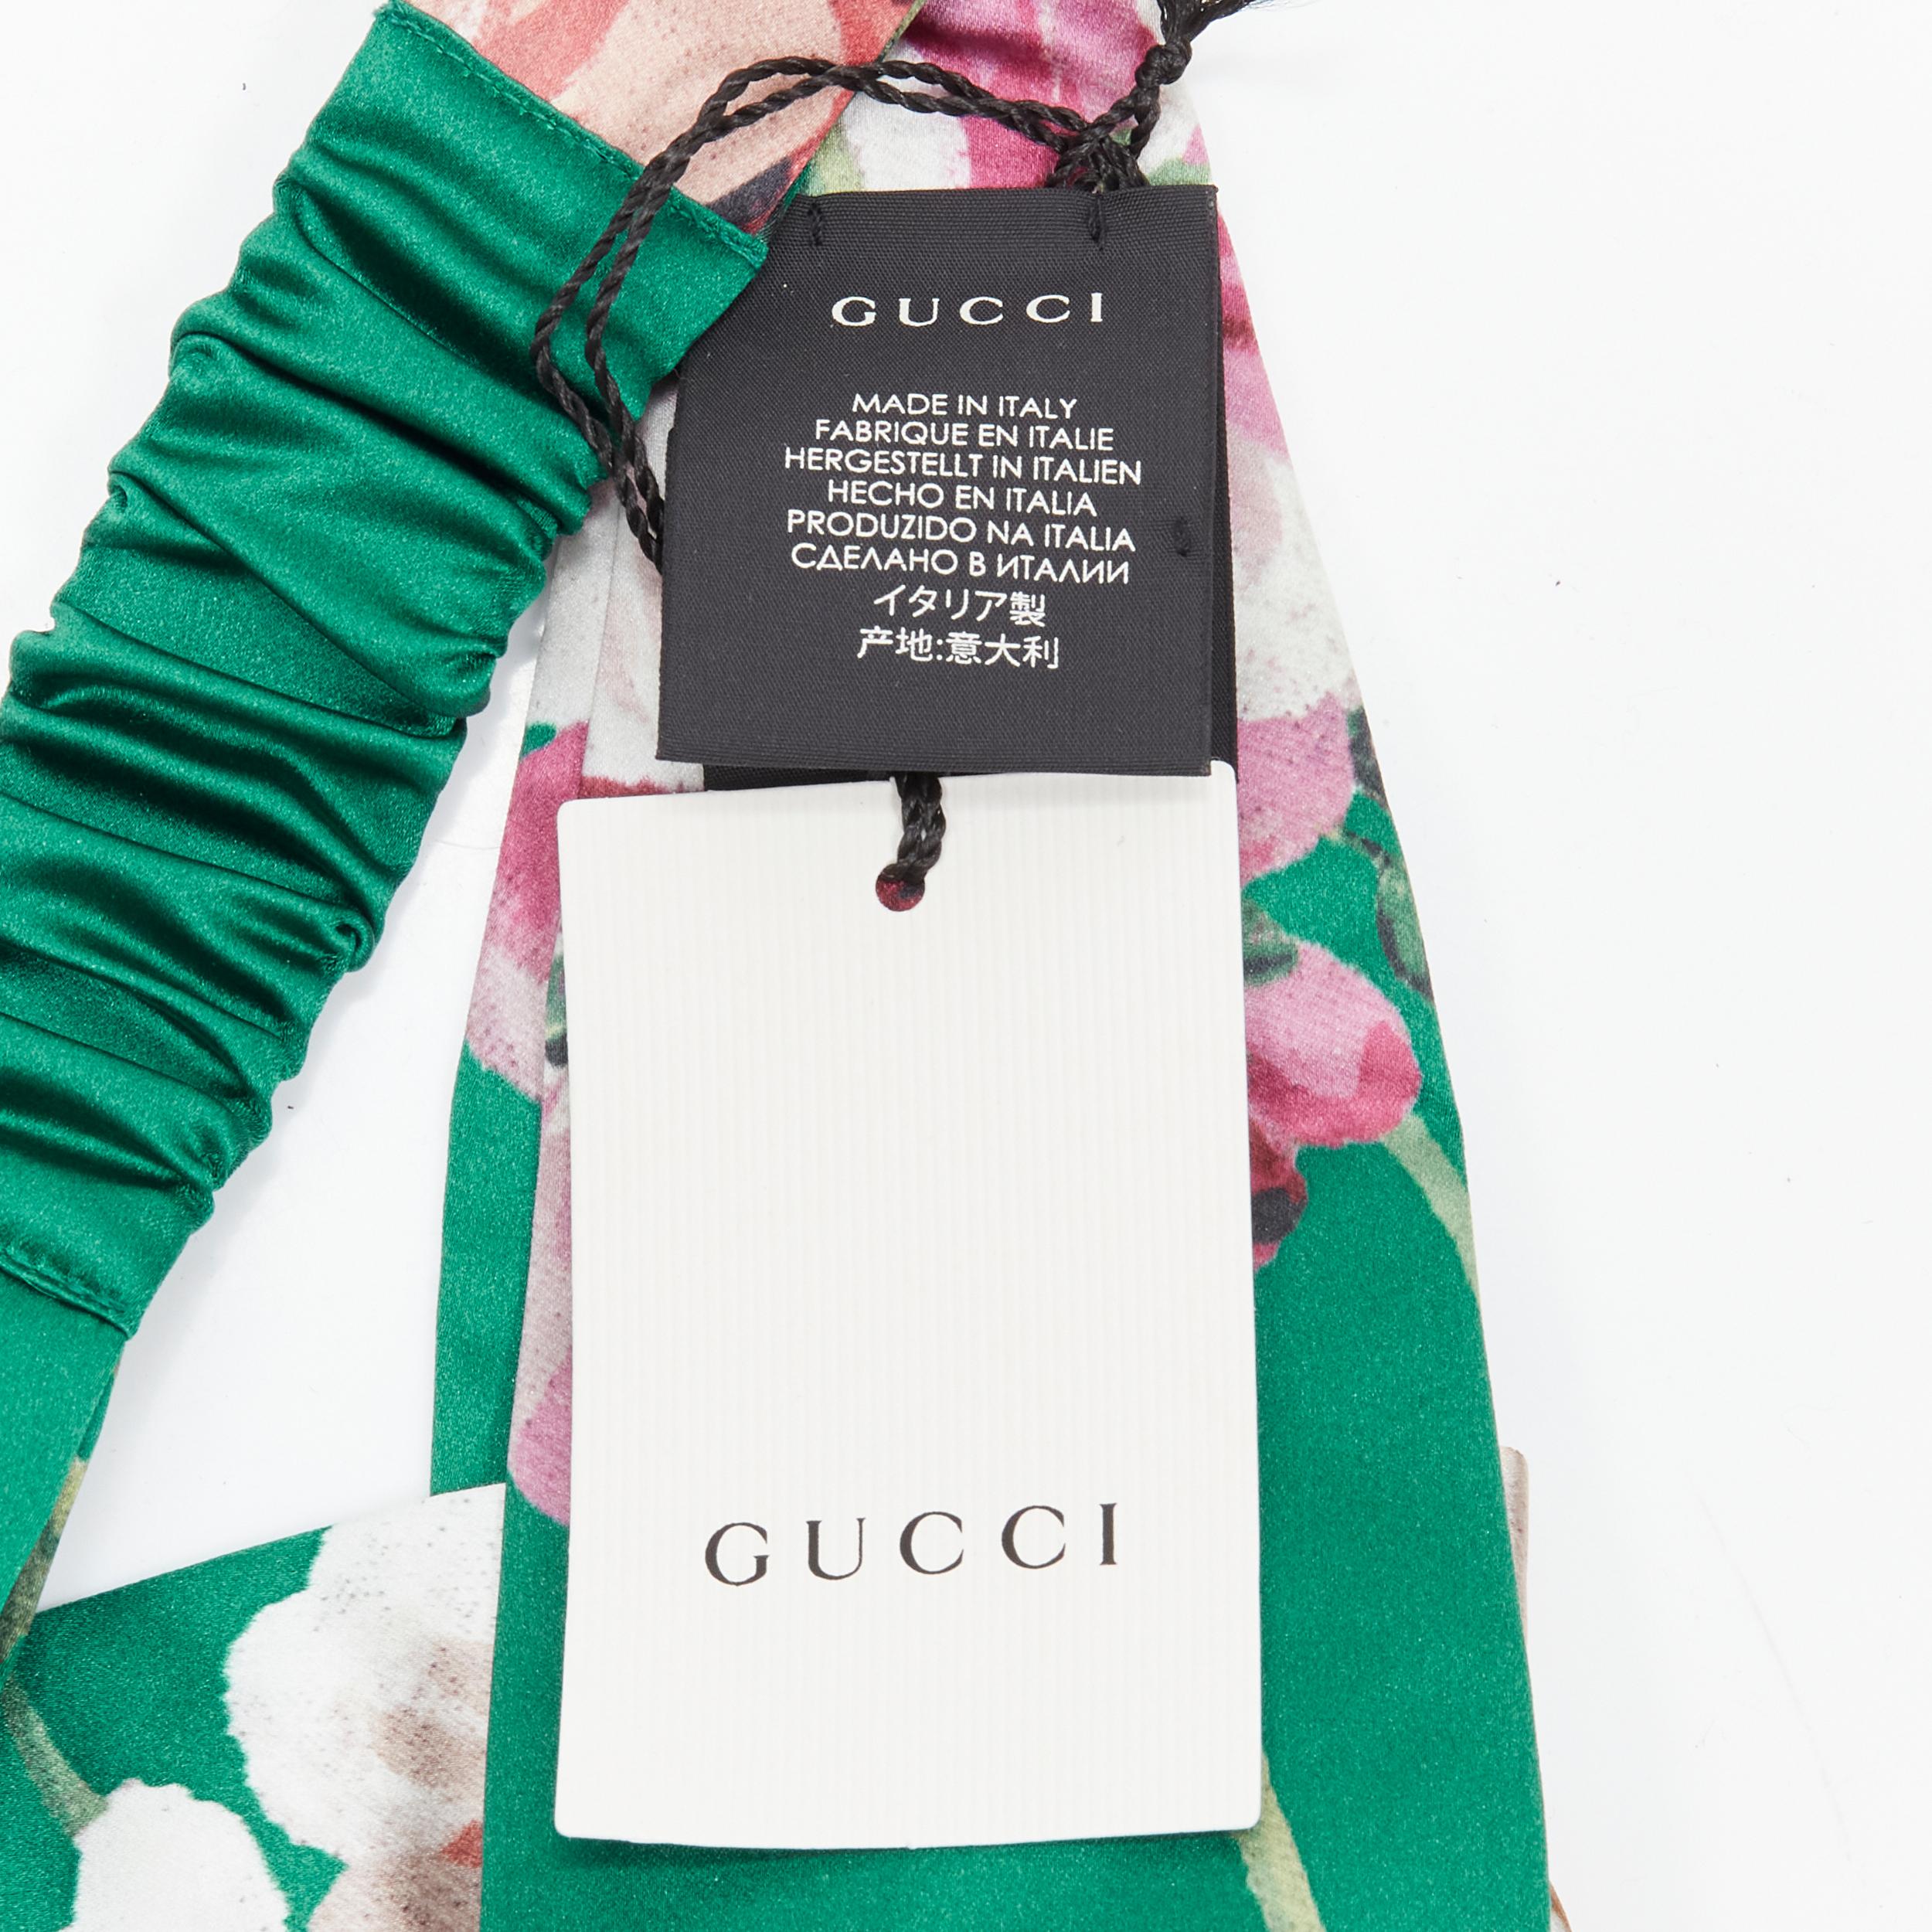 new GUCCI Blooms 100% silk green pink blossom print silk knit turban head scarf 2